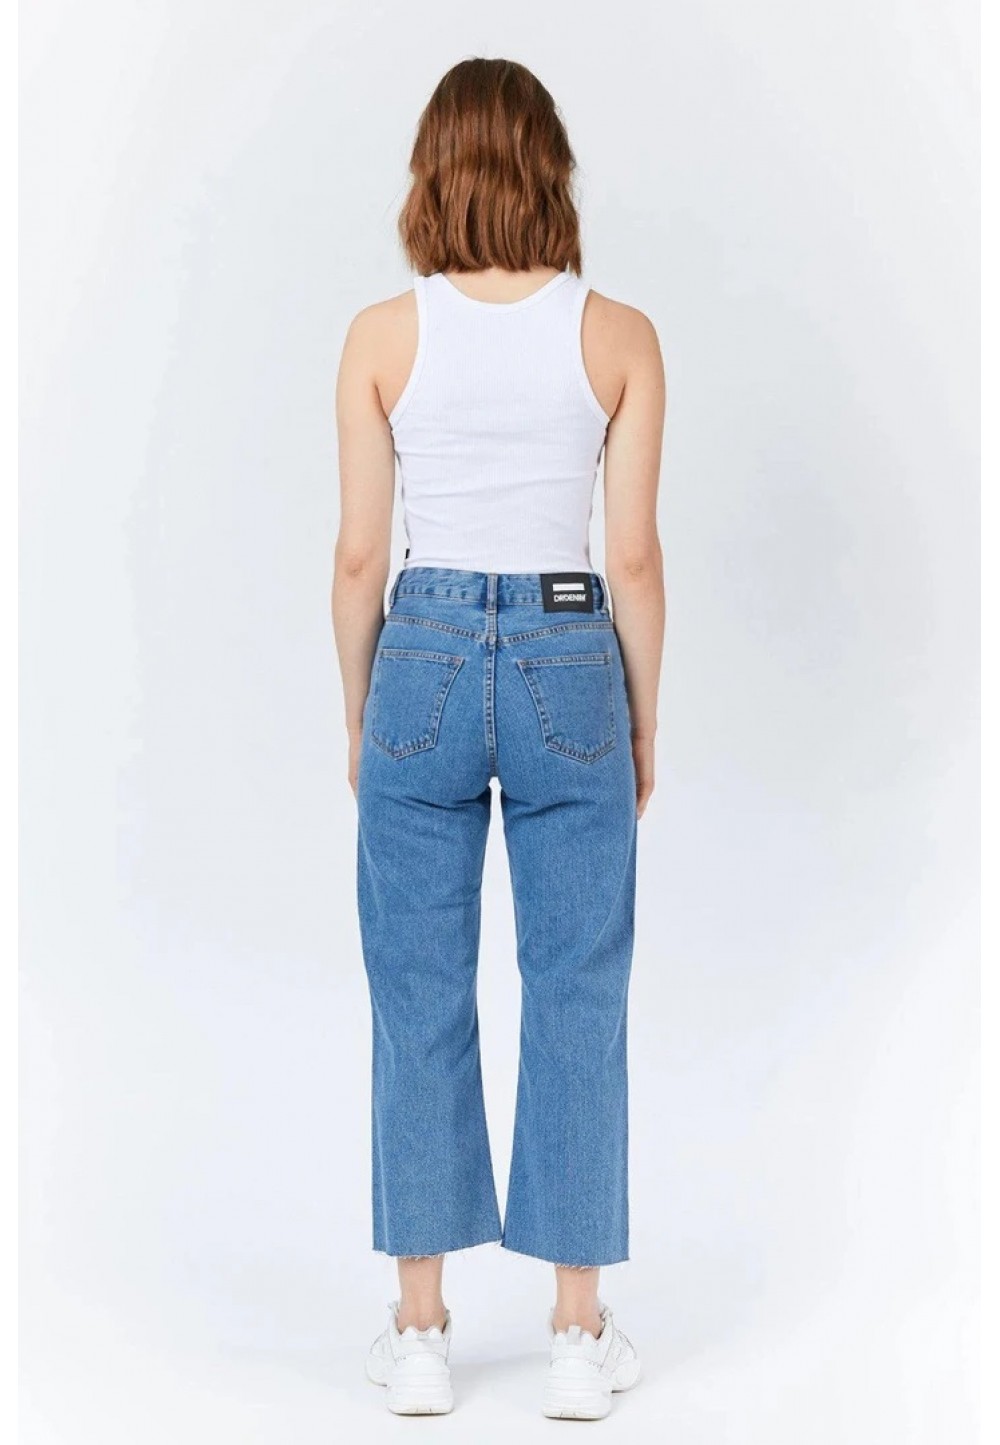 Стильные женские джинсы 